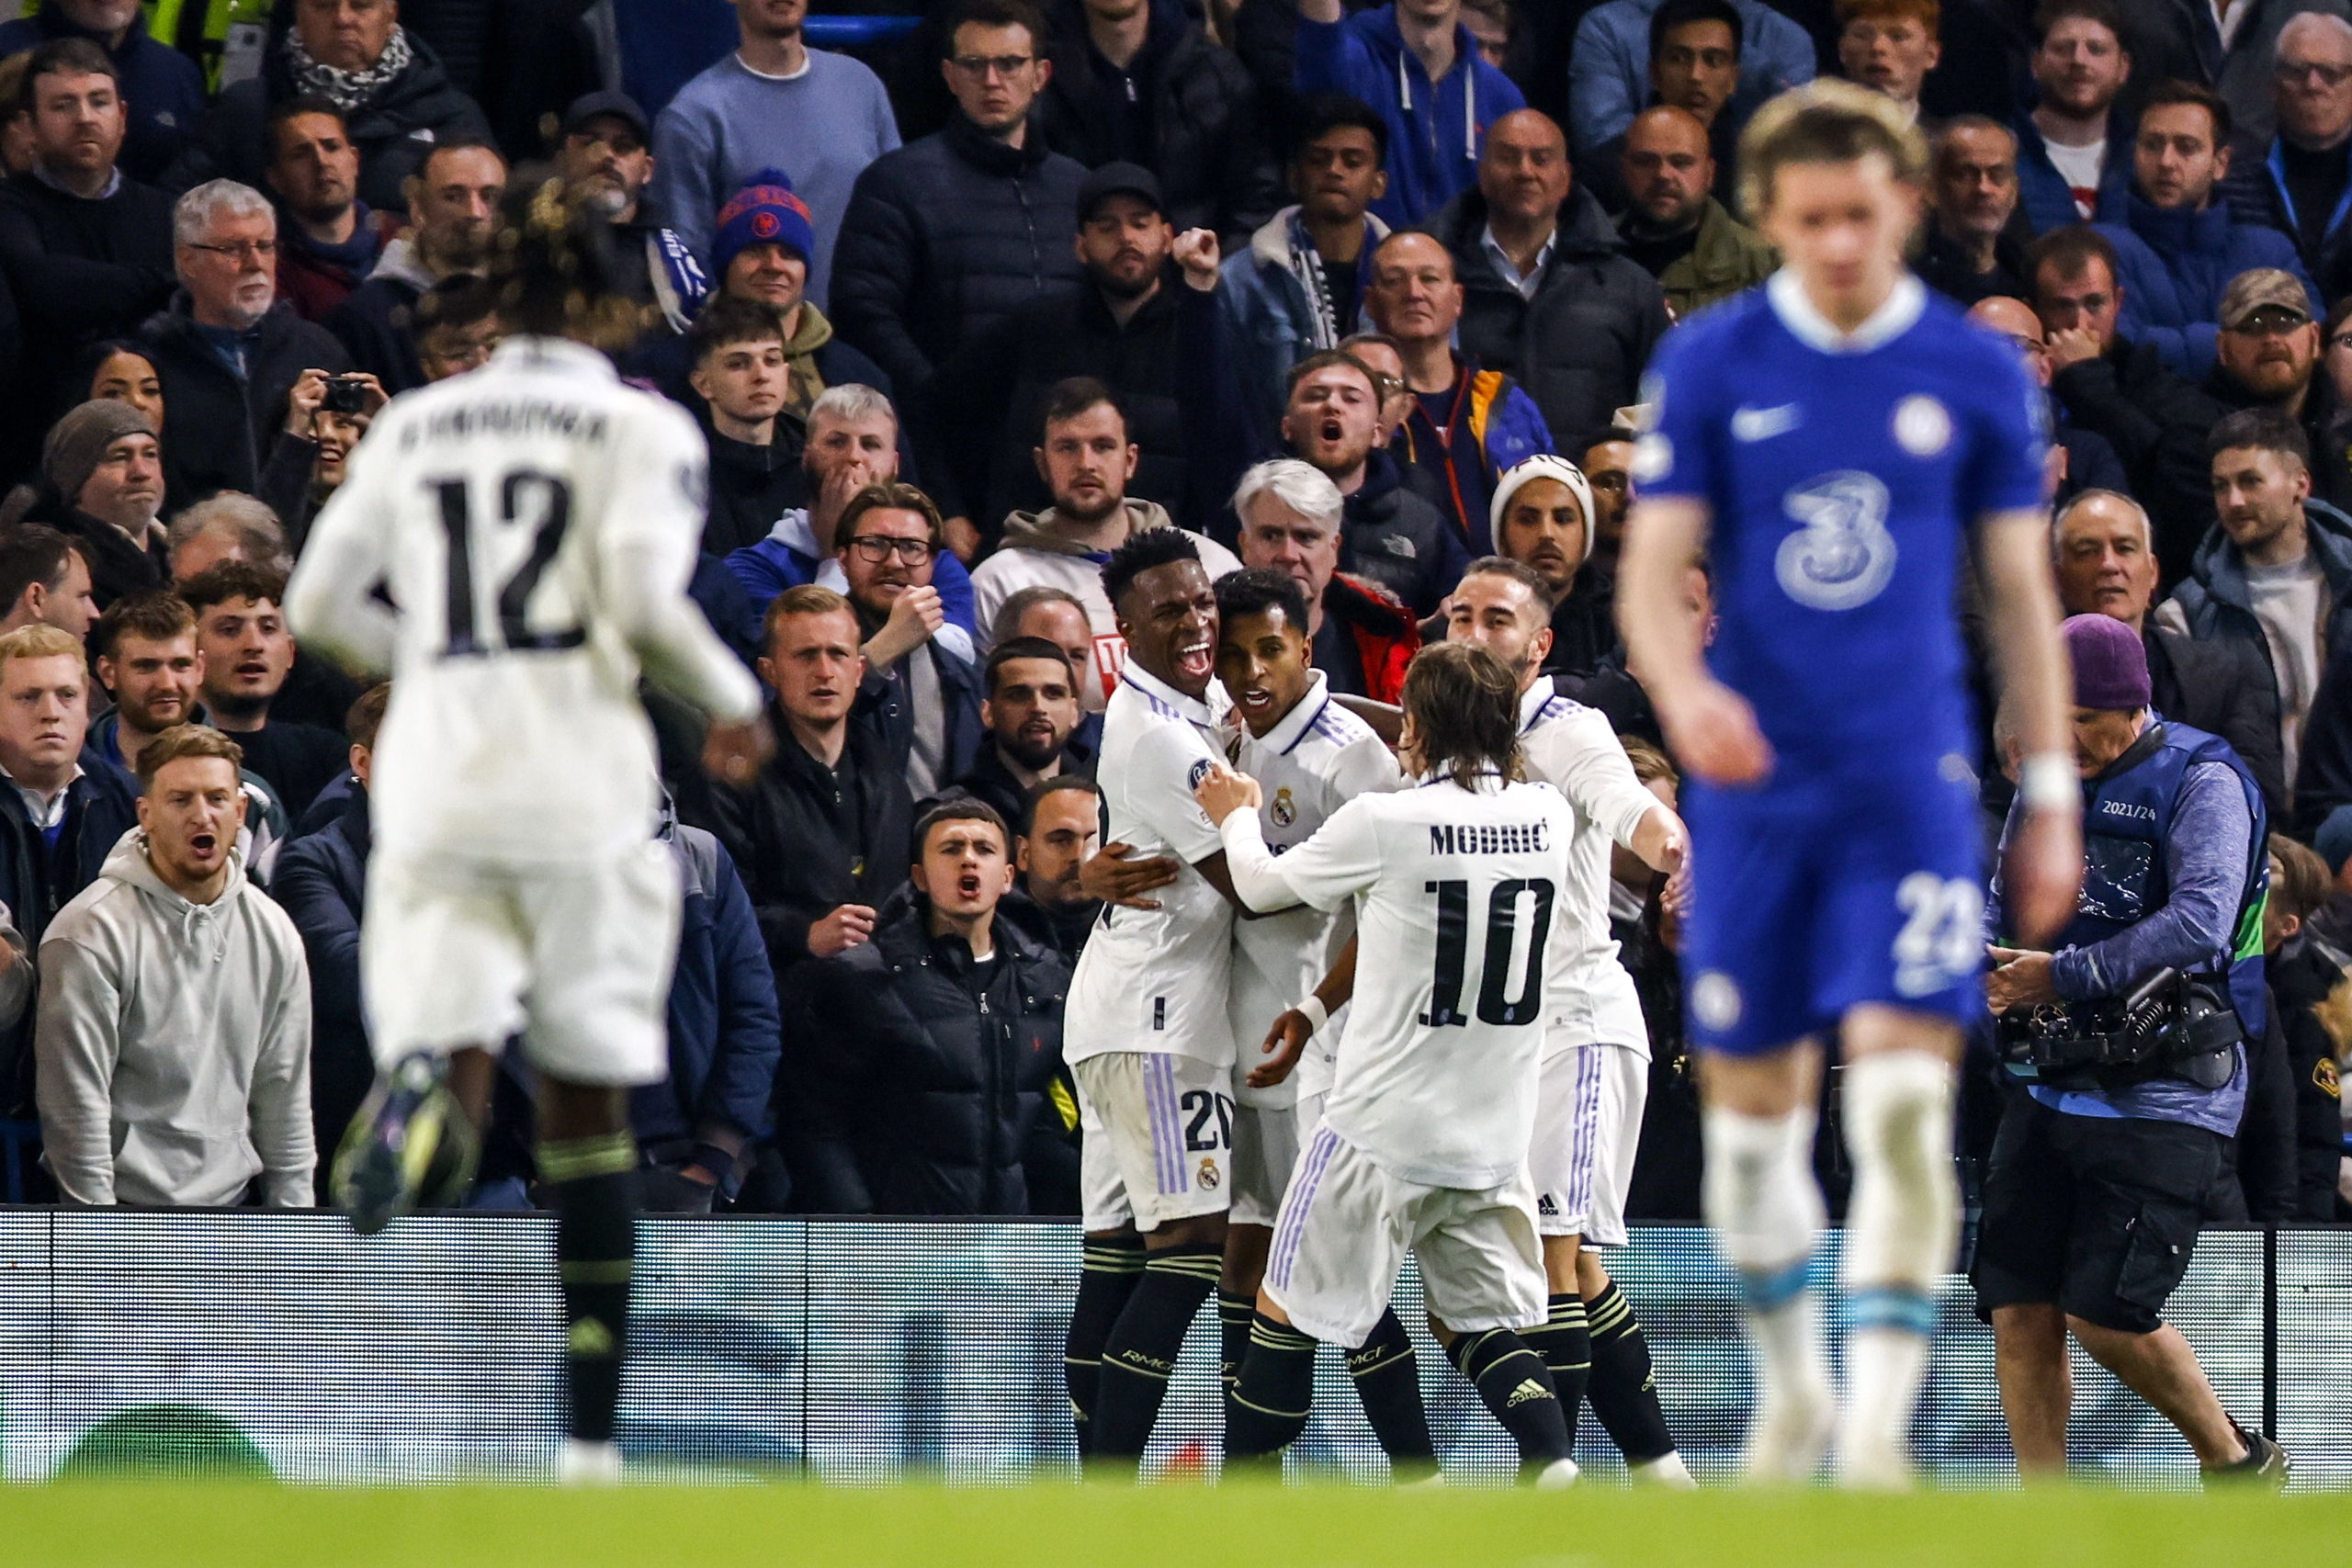 El Real Madrid remata la faena ante un flojo Chelsea y sella el billete a semifinales (0-2)